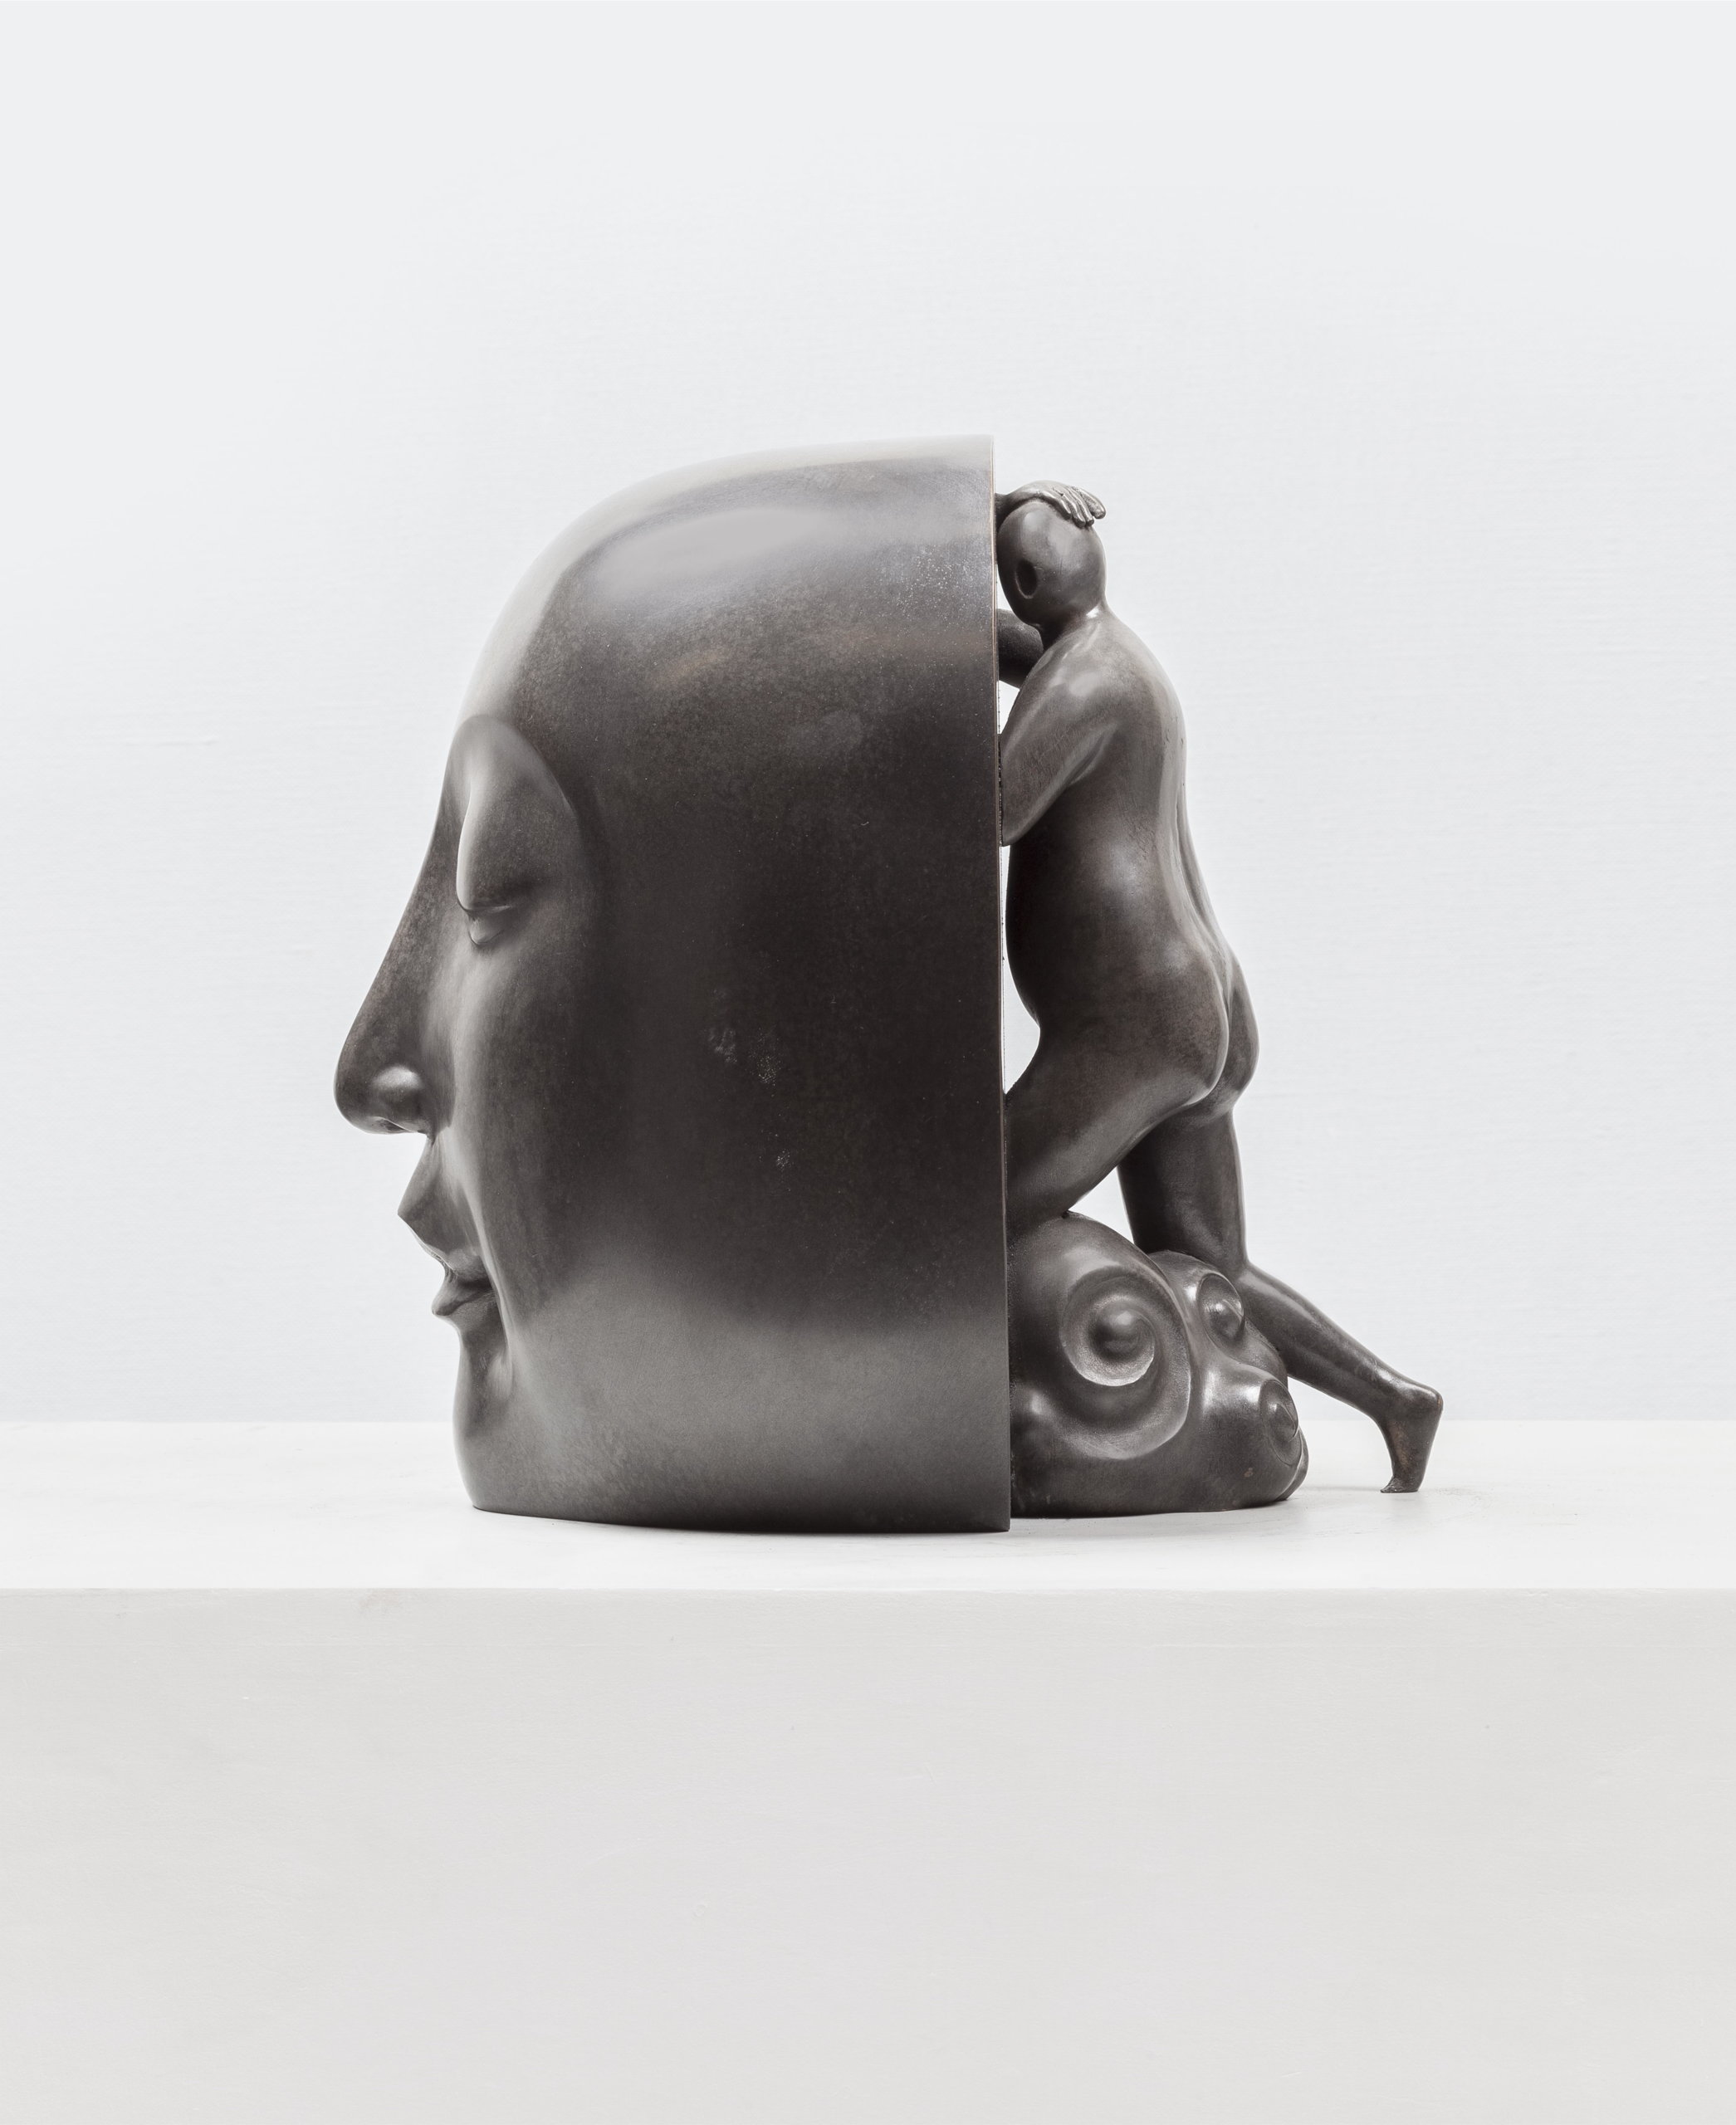 Guan Wei, Salvation No.4, 2015, bronze sculpture, ed of 5, 28x23x29cm